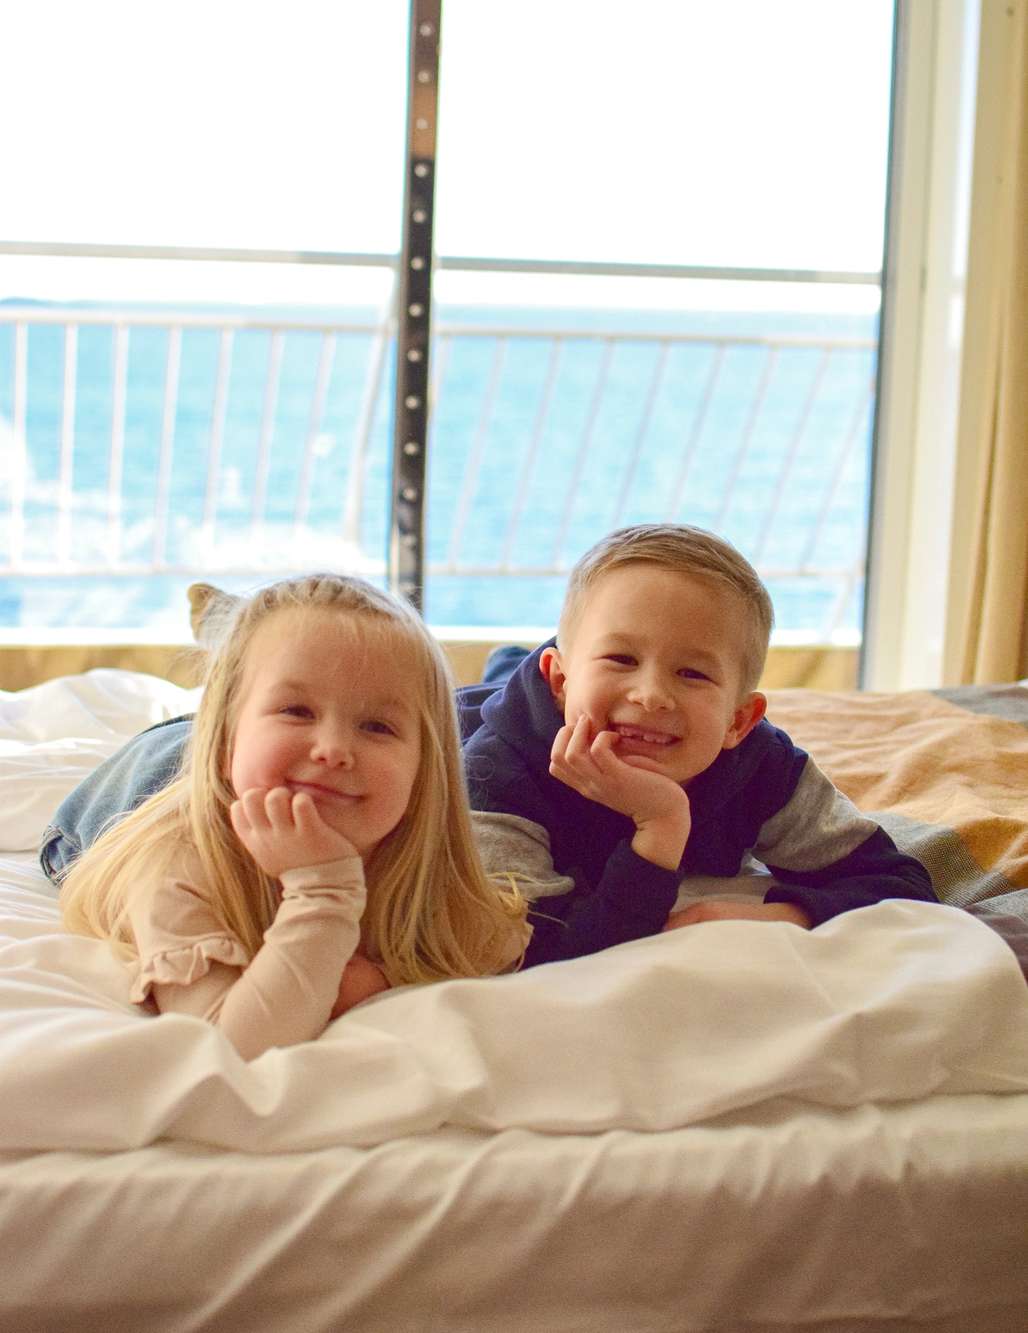 Gleder seg til senga: Amelia og Jacob har storkost seg og gleder seg til å sove om bord i skipet. 